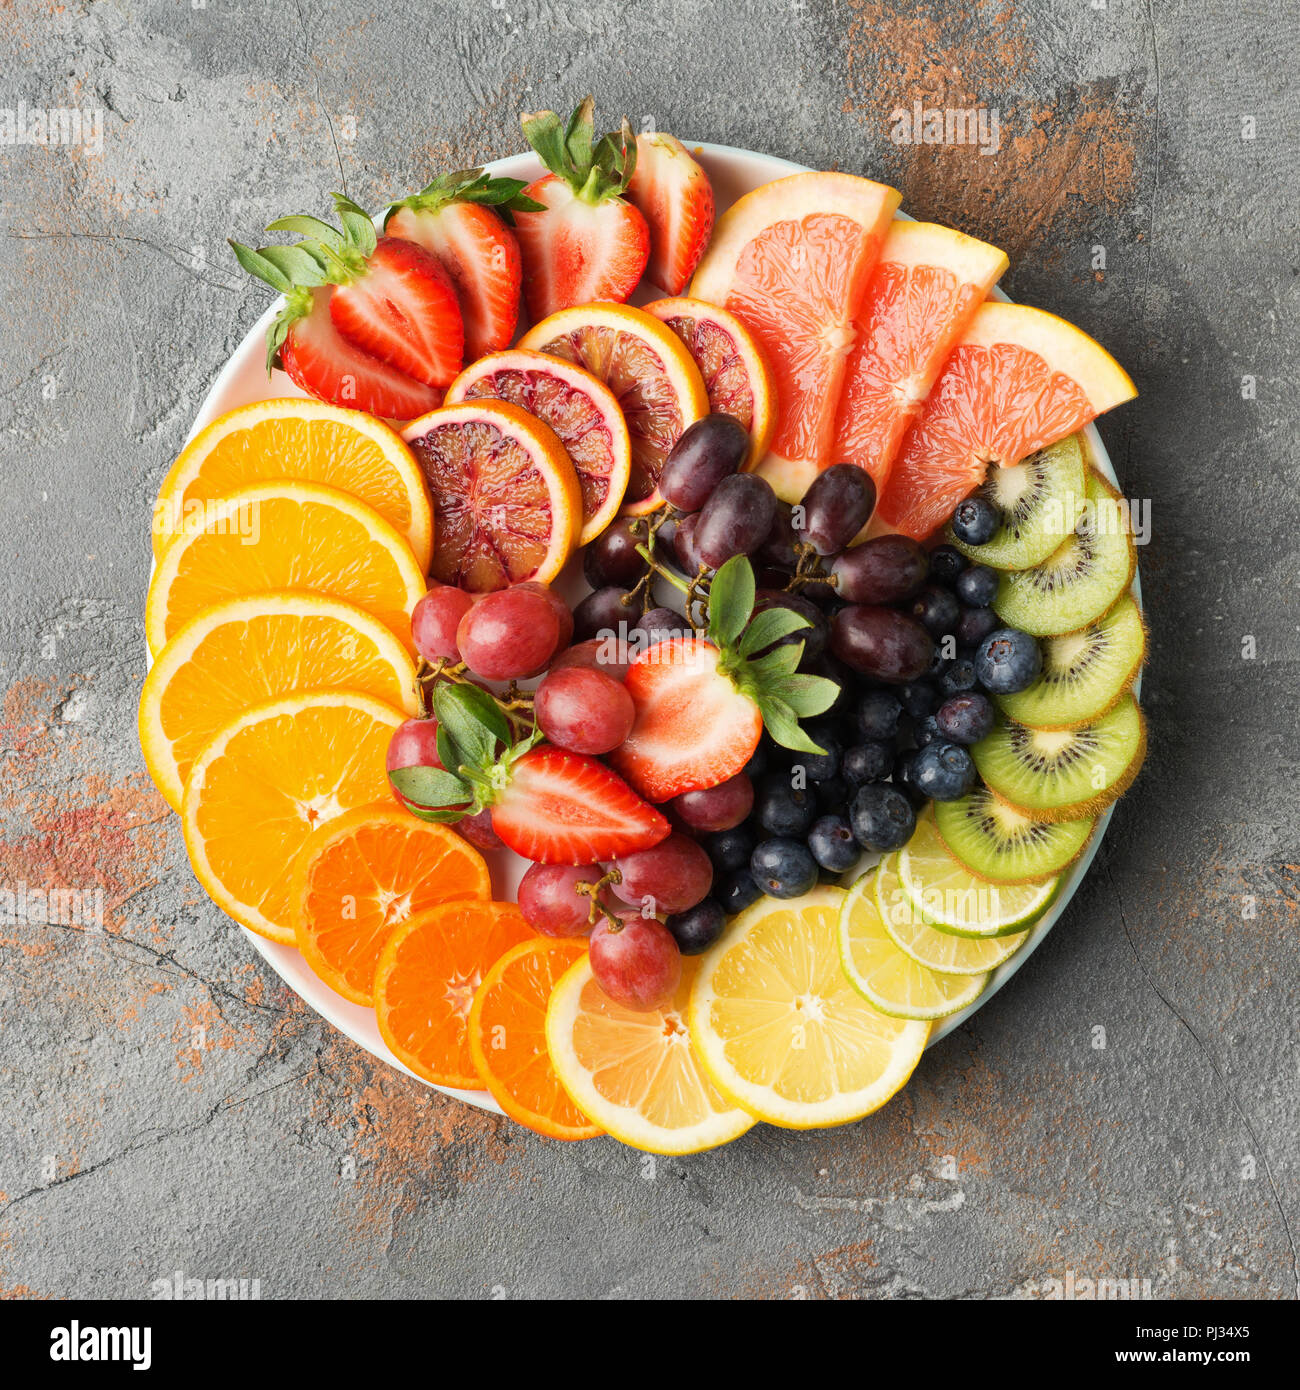 Assortiment de fruits coupés en couleurs arc-en-ciel raisins oranges fraises kiwis mangue pamplemousses sur les bleuets la table de béton gris, copiez l'espace, vue d'en haut, carré, selective focus Banque D'Images